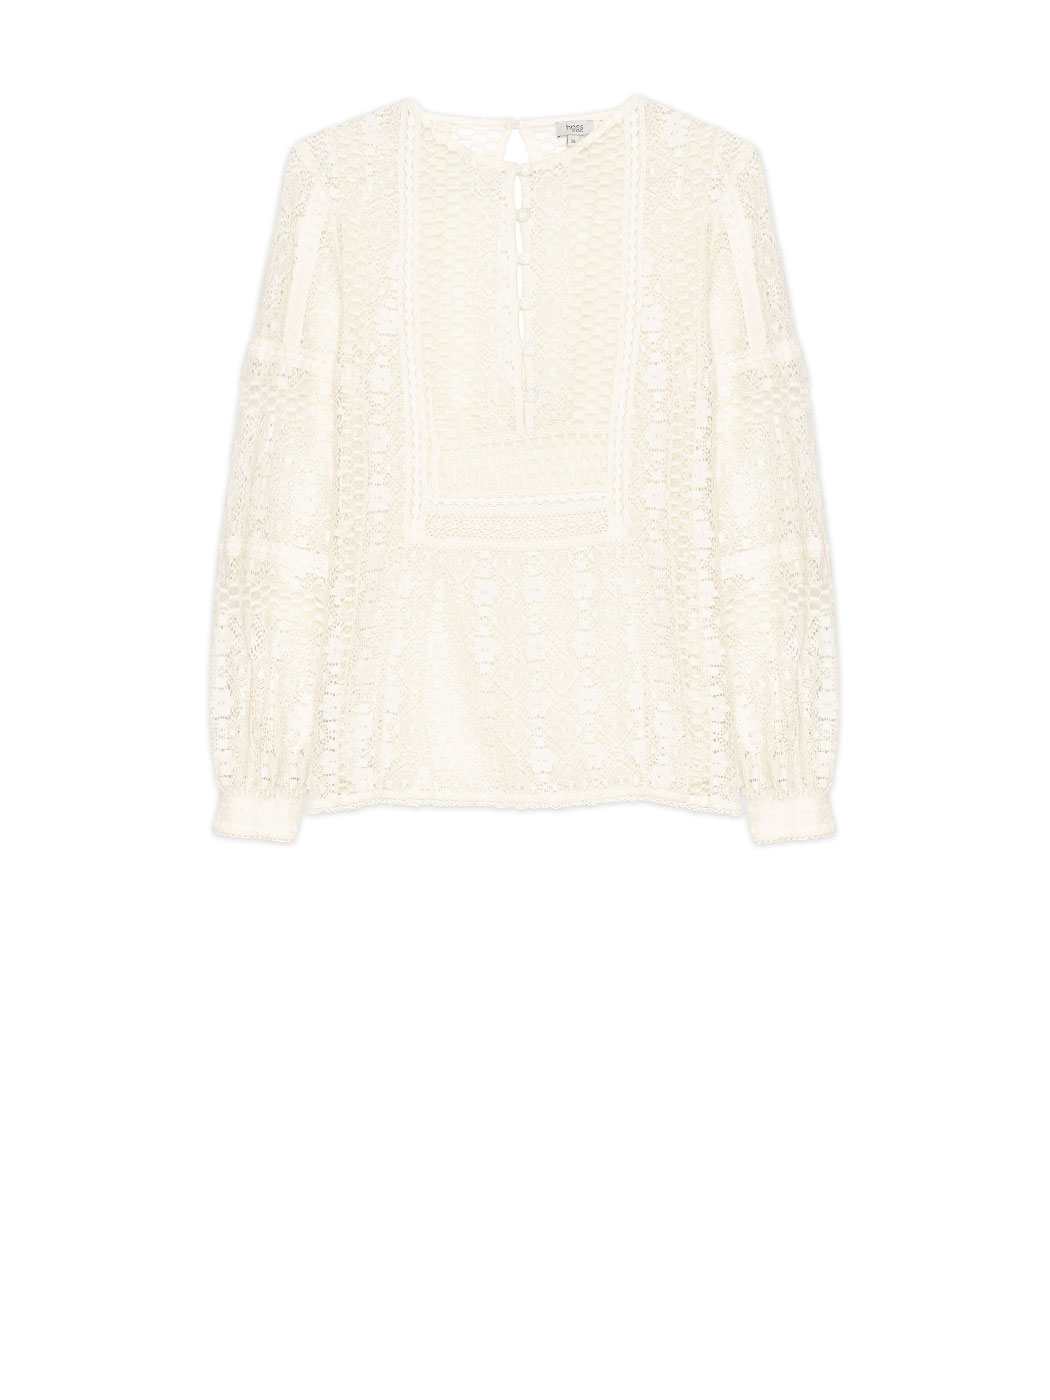 Blusa transparente confeccionada en algodón y nylon con un diseño de encaje mezclado con calados de inspiración victoriana romántica mezclado con un estilo folk campestre.